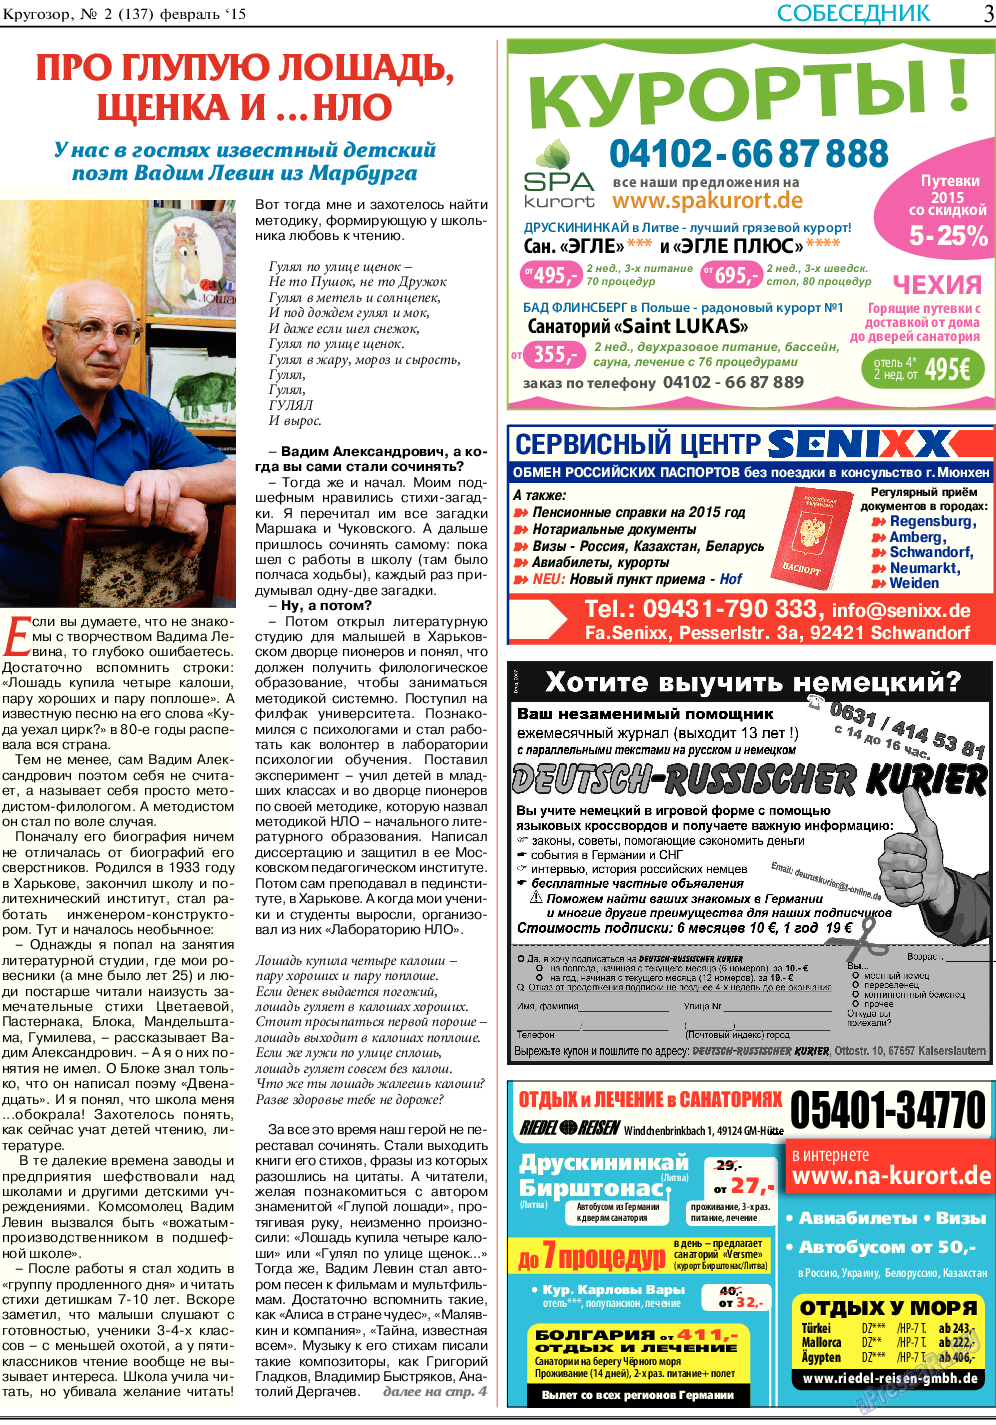 Кругозор, газета. 2015 №2 стр.3